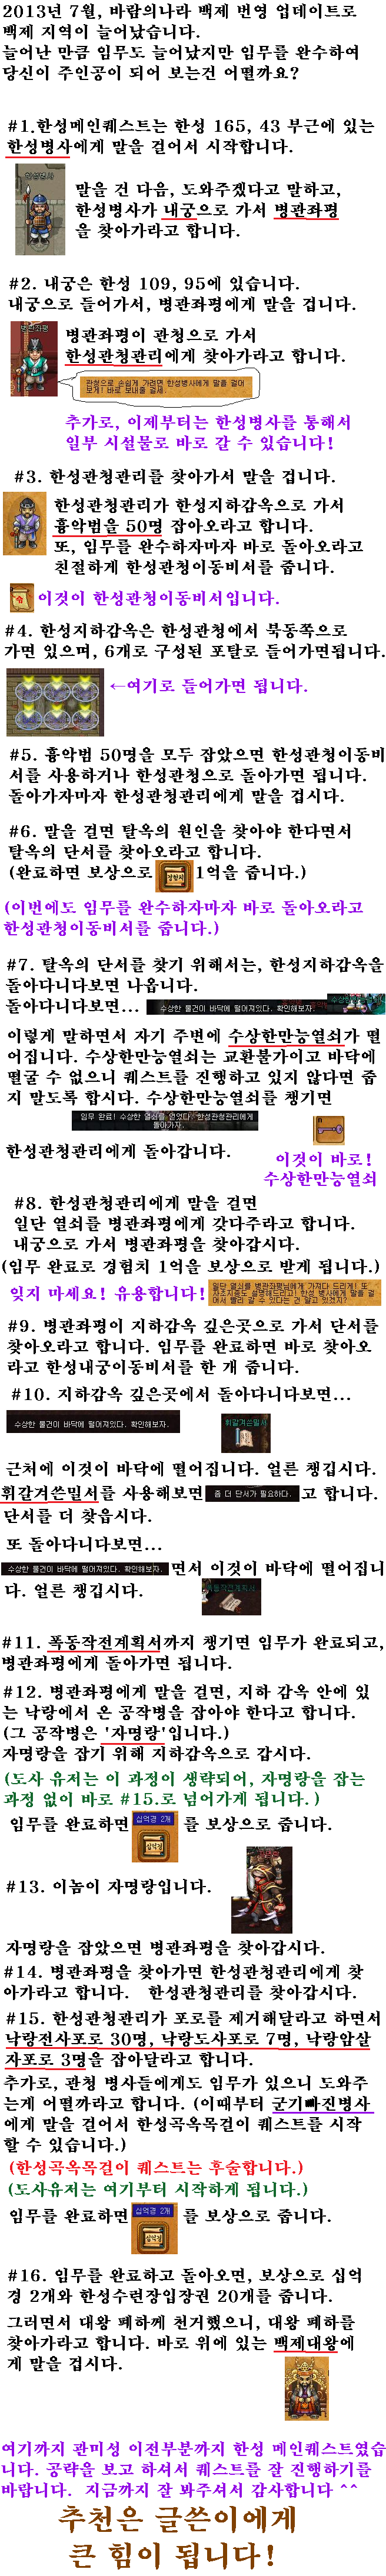 한성메인퀘 (백제대왕 전까지.).png